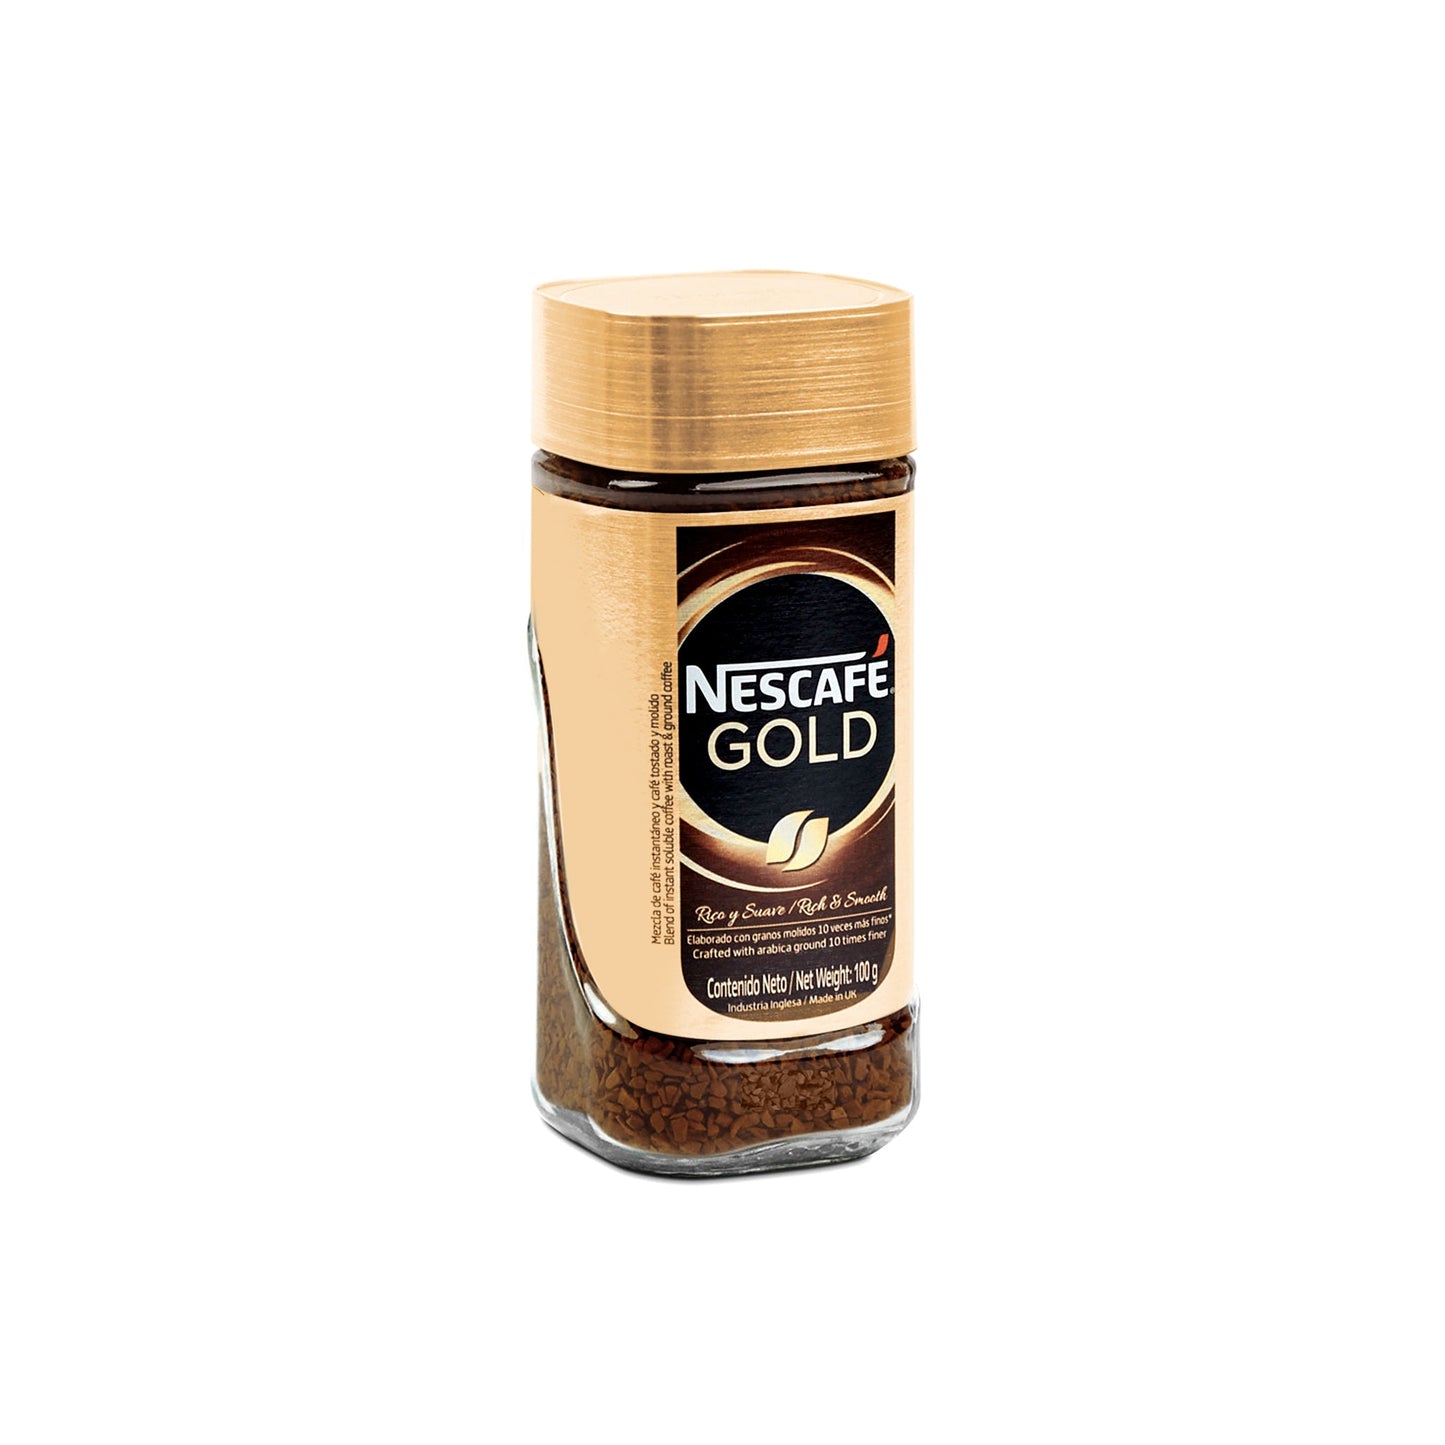 Nescafé® Gold 100g